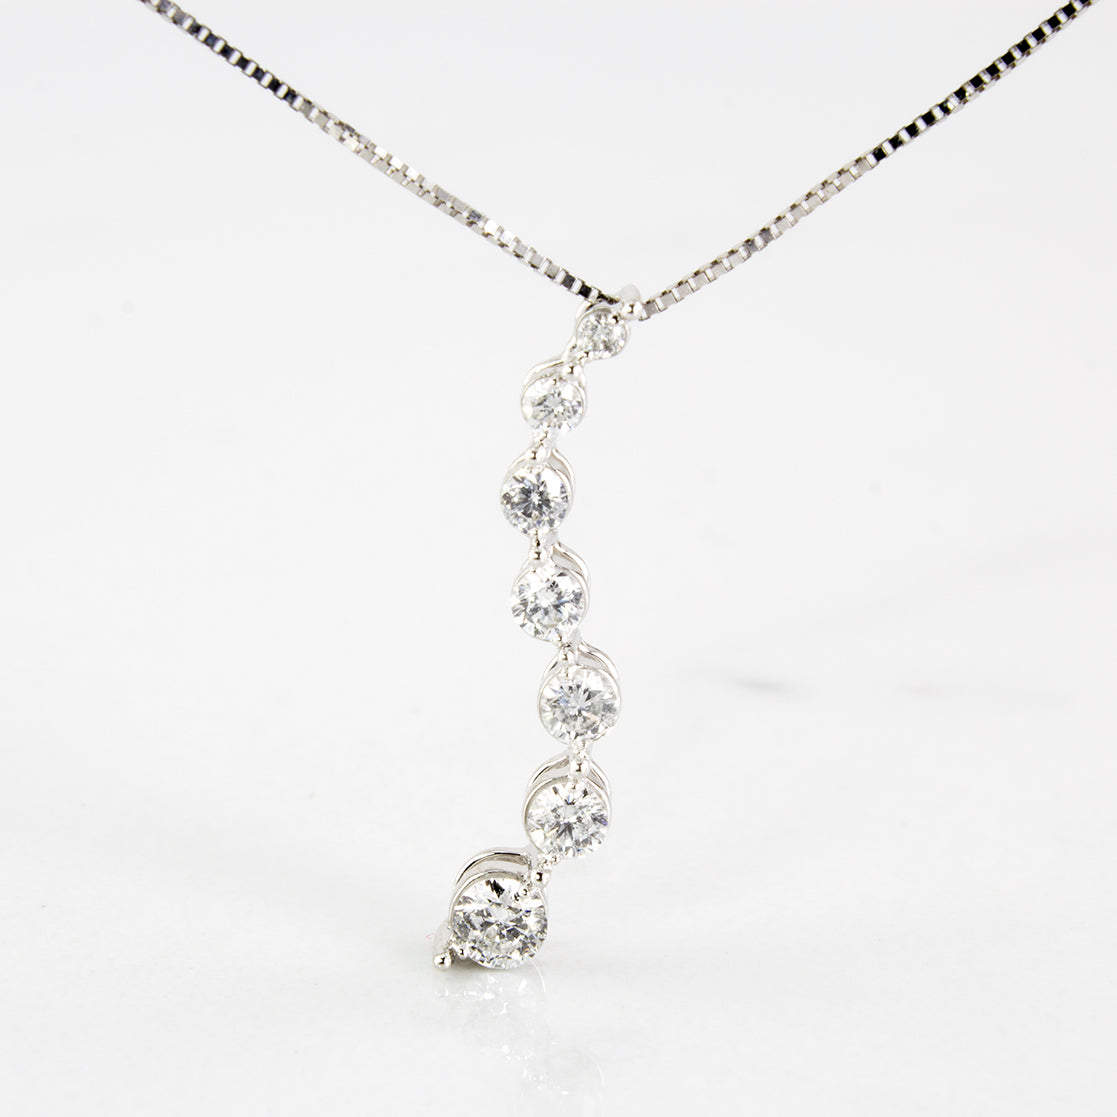 Seven Diamond Journey Necklace | 0.49 ctw | SZ 18